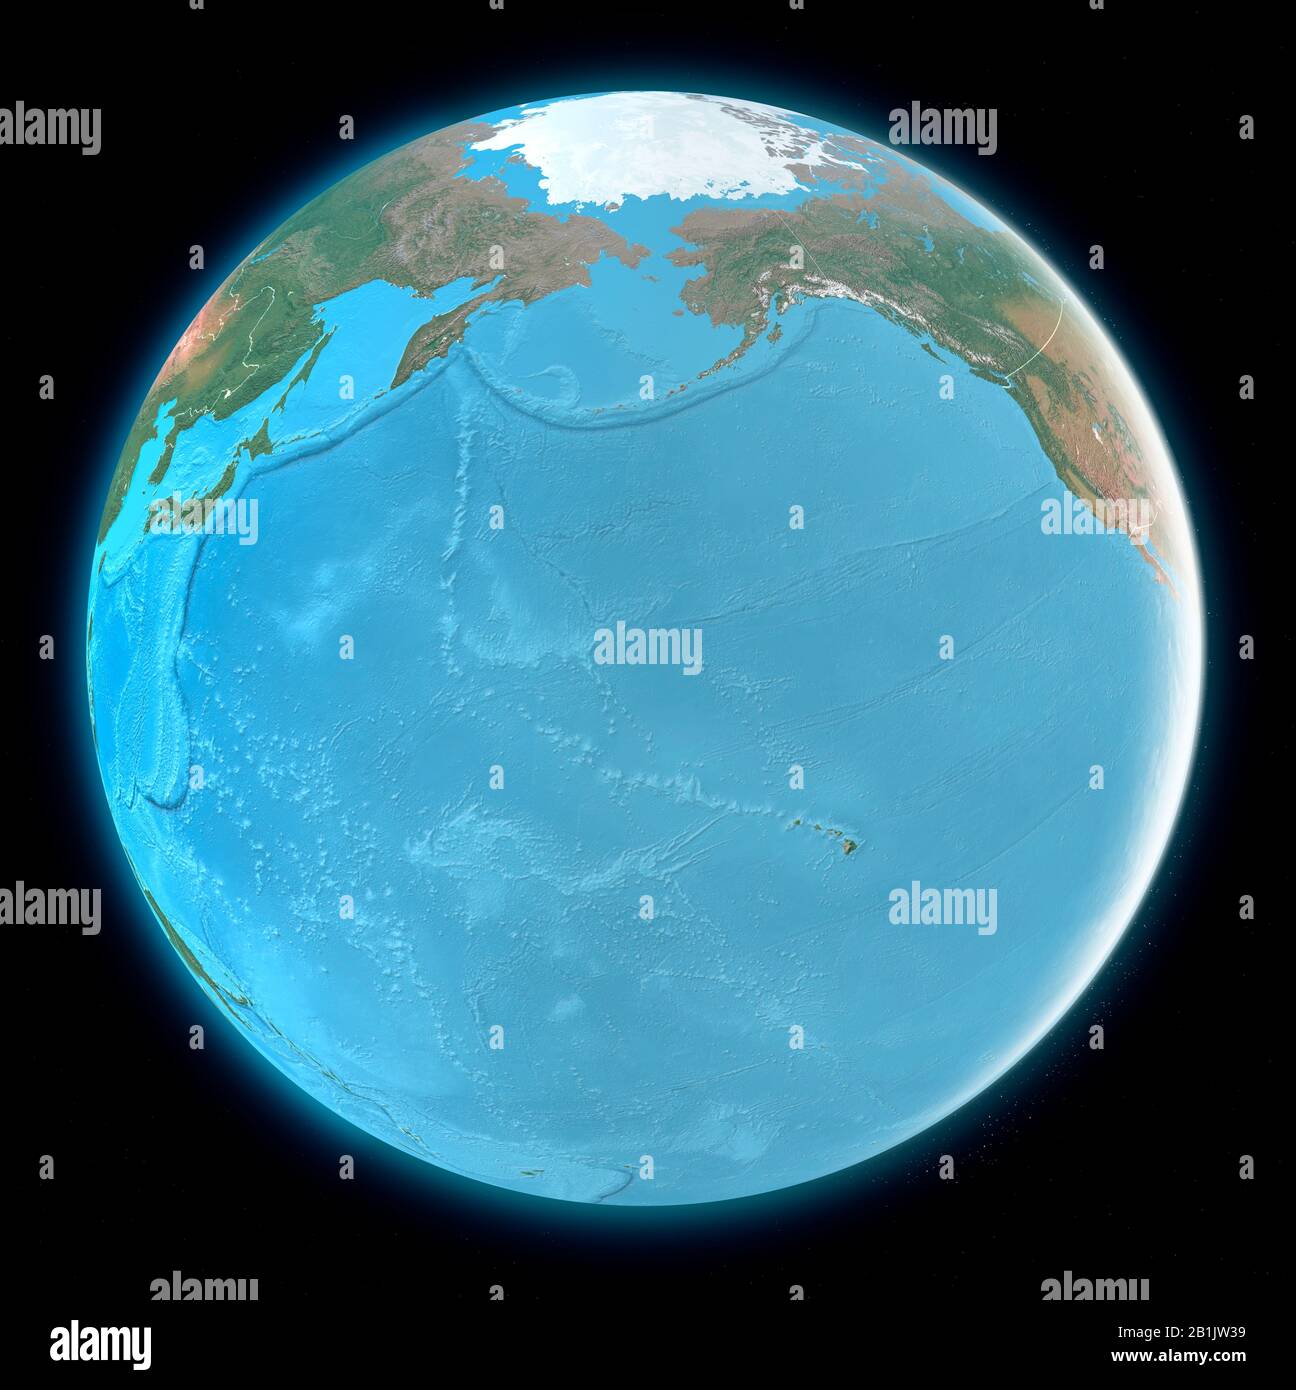 Weltkarte des Pazifischen Ozeans, Asiens und Amerikas. Hawaii. Kartografie, geografischer Atlas. 3D-Rendering Stockfoto